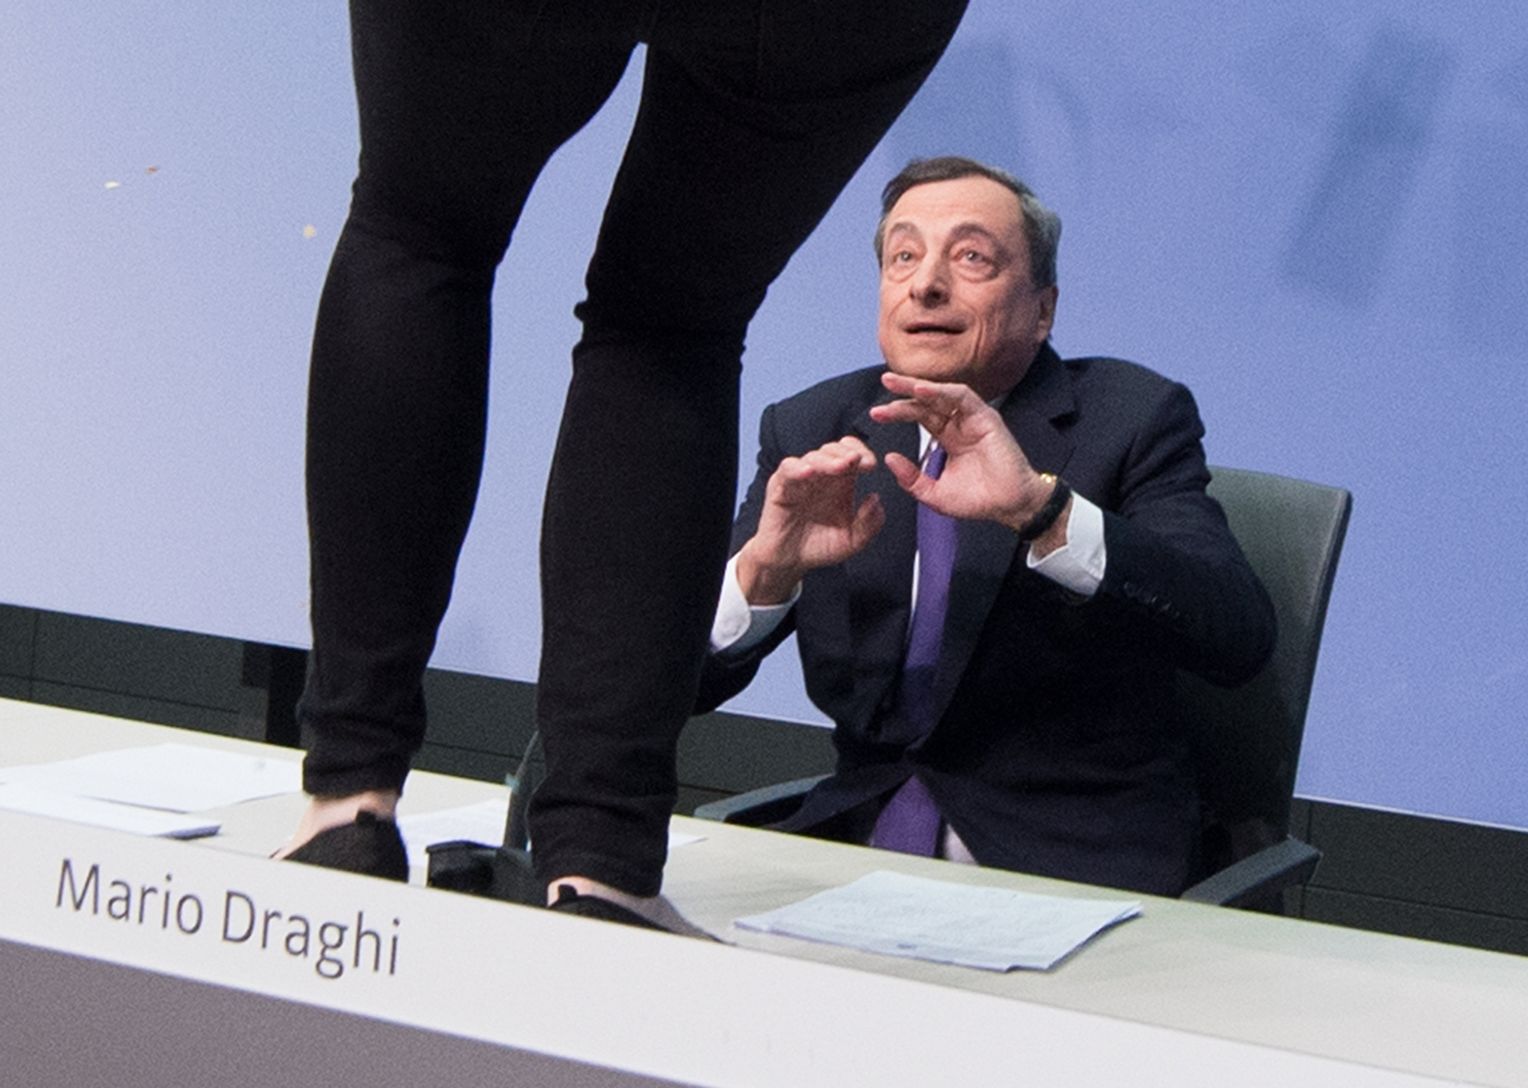 Eine Aktivistin stört am 15.04.2015 die Pressekonferenz der Europäischen Zentralbank in Frankfurt am Main (Hessen) und steht dabei vor dem EZB-Präsidenten Mario Draghi auf einem Tisch. Sicherheitskräfte der Bank führten die Frau ab. Näheres zu den Hintergründen der Aktion war zunächst nicht bekannt. Foto: Boris Roessler/dpa +++(c) dpa - Bildfunk+++